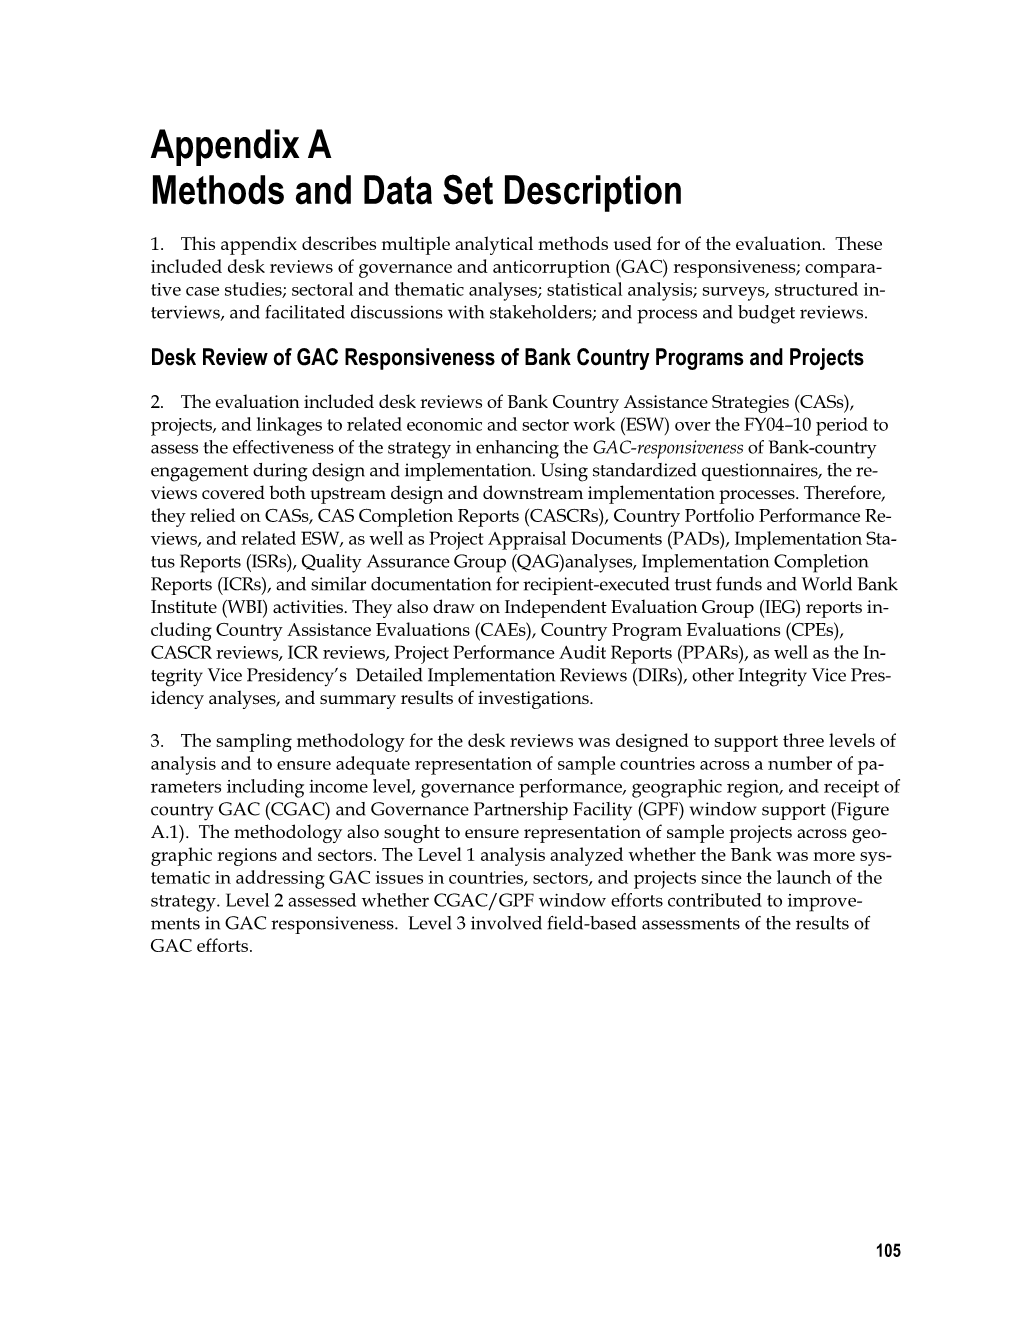 Appendix a Methods and Data Set Description